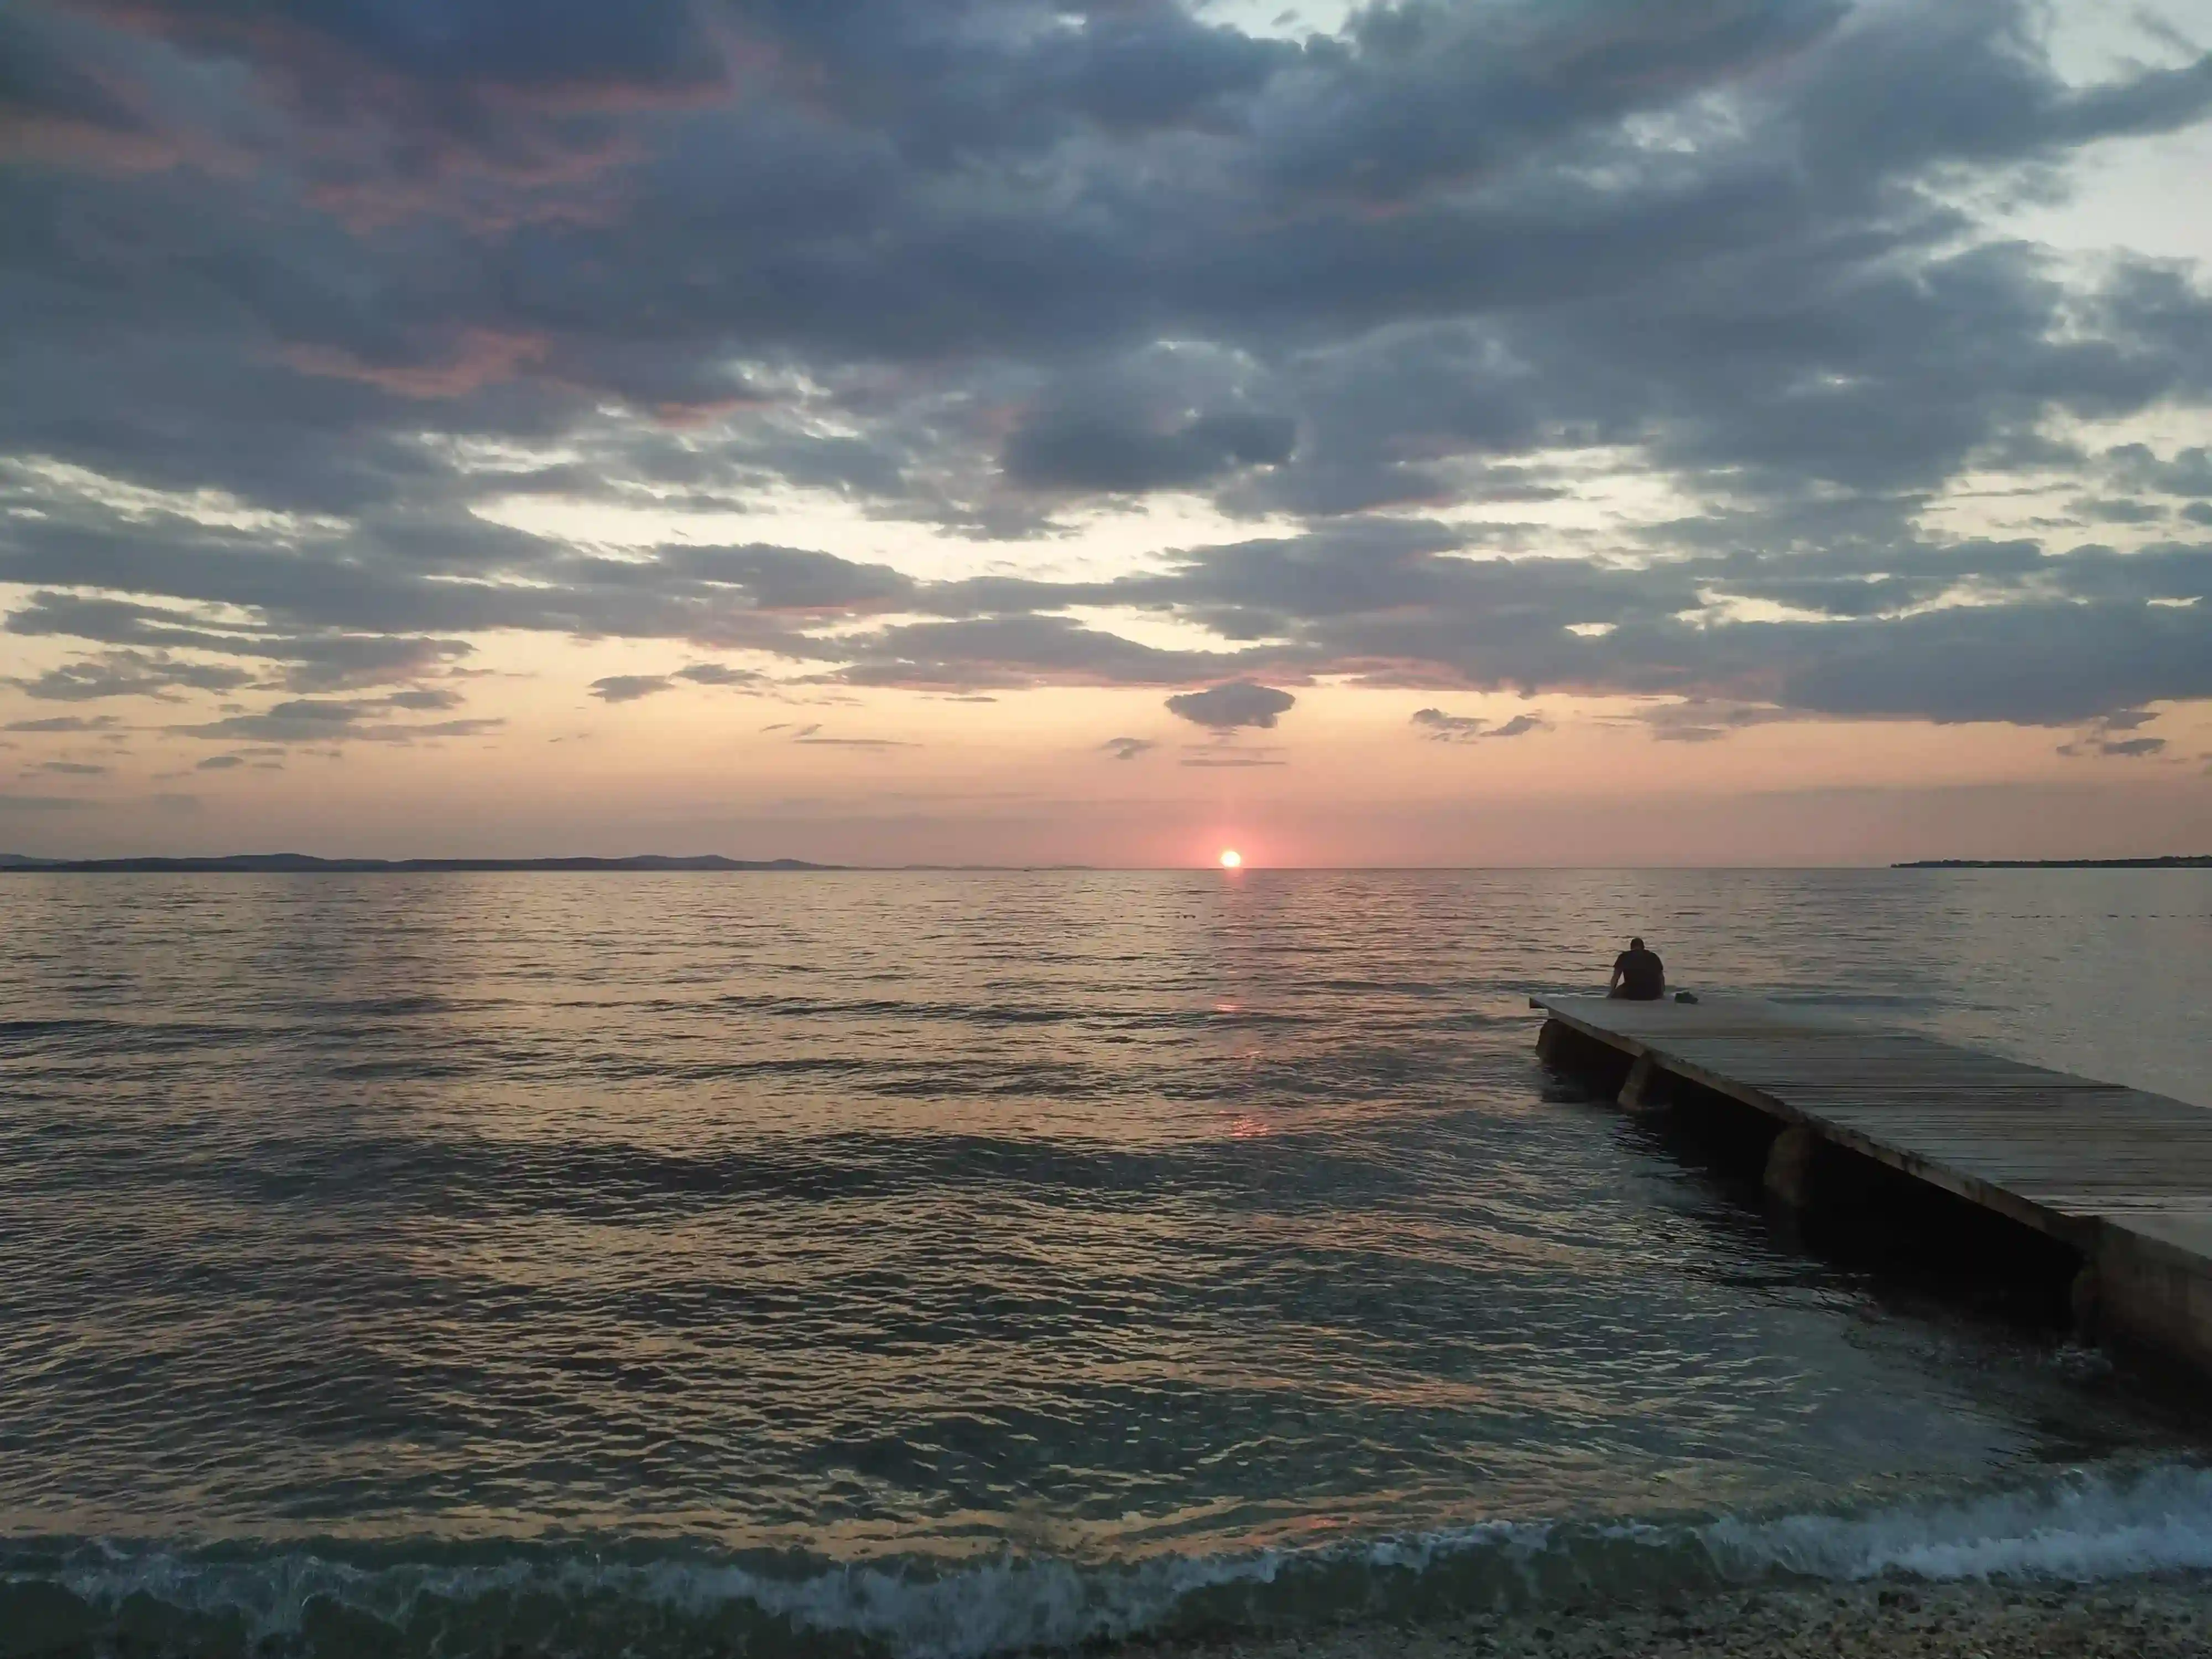 Zdjęcie morza podczas zachodu słońca zrobione na wymarzonych wakacjach.